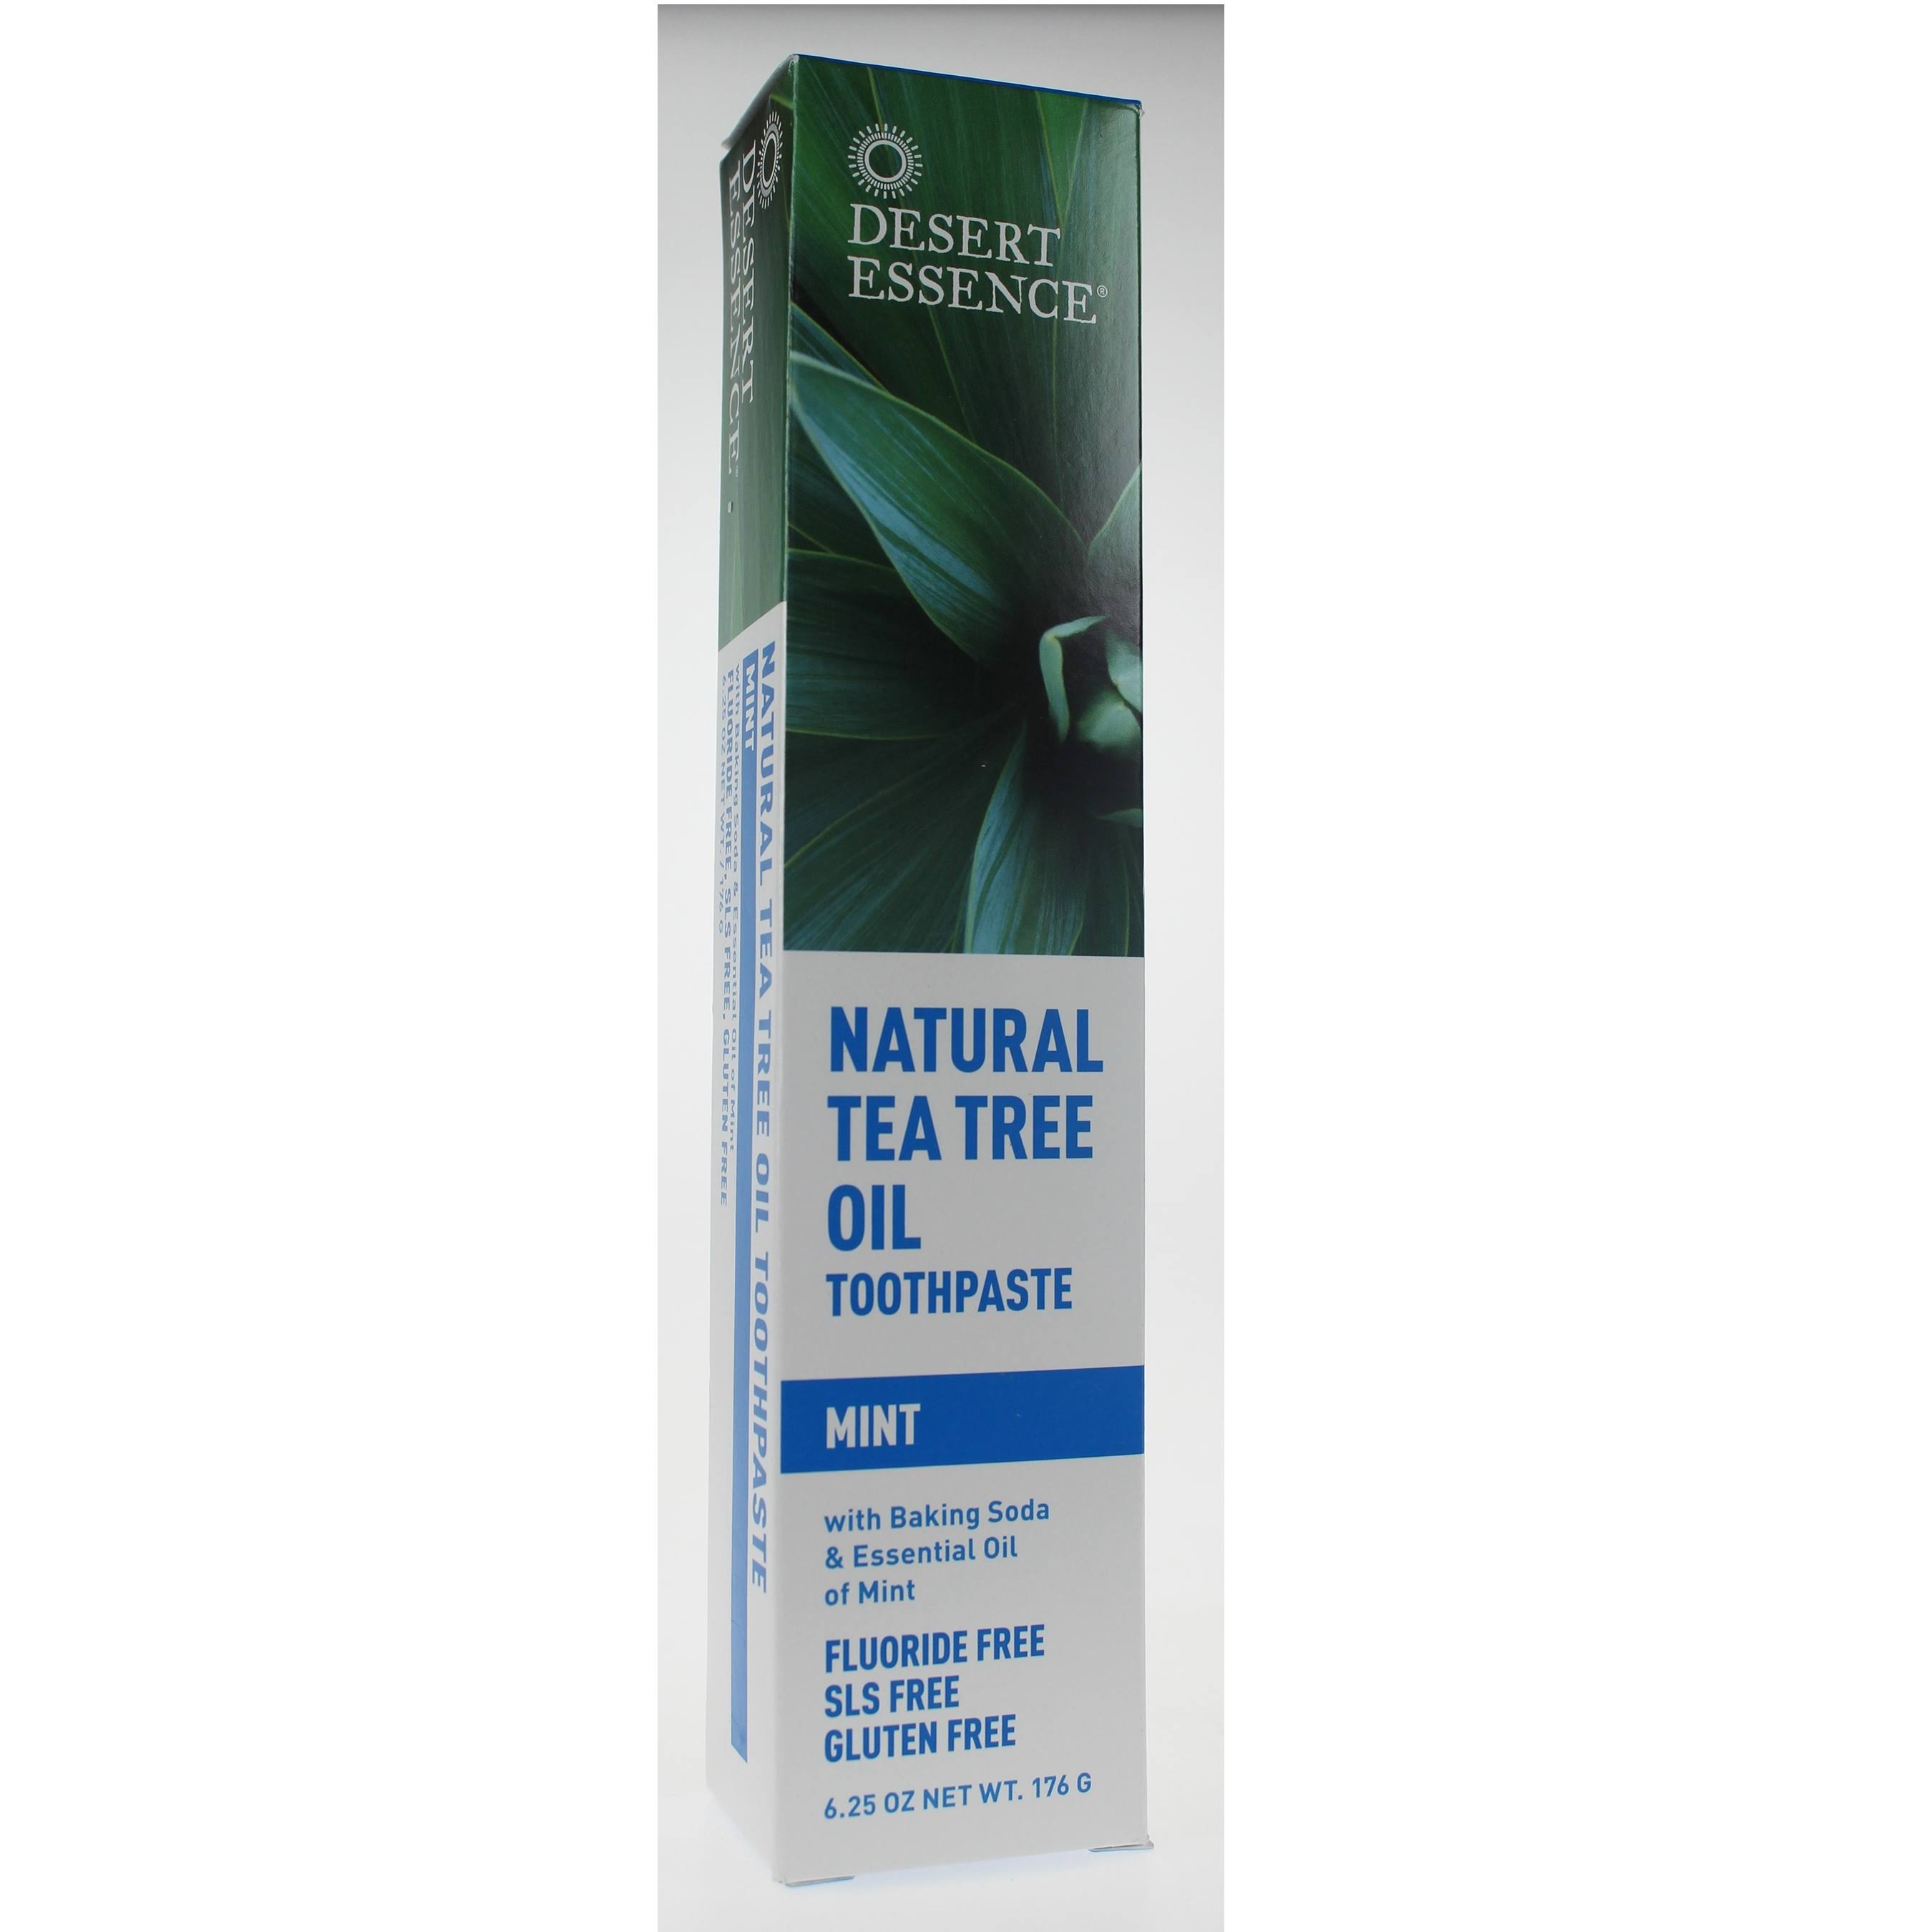 Desert Essence Natural Tea Tree Oil Toothpaste - Mint